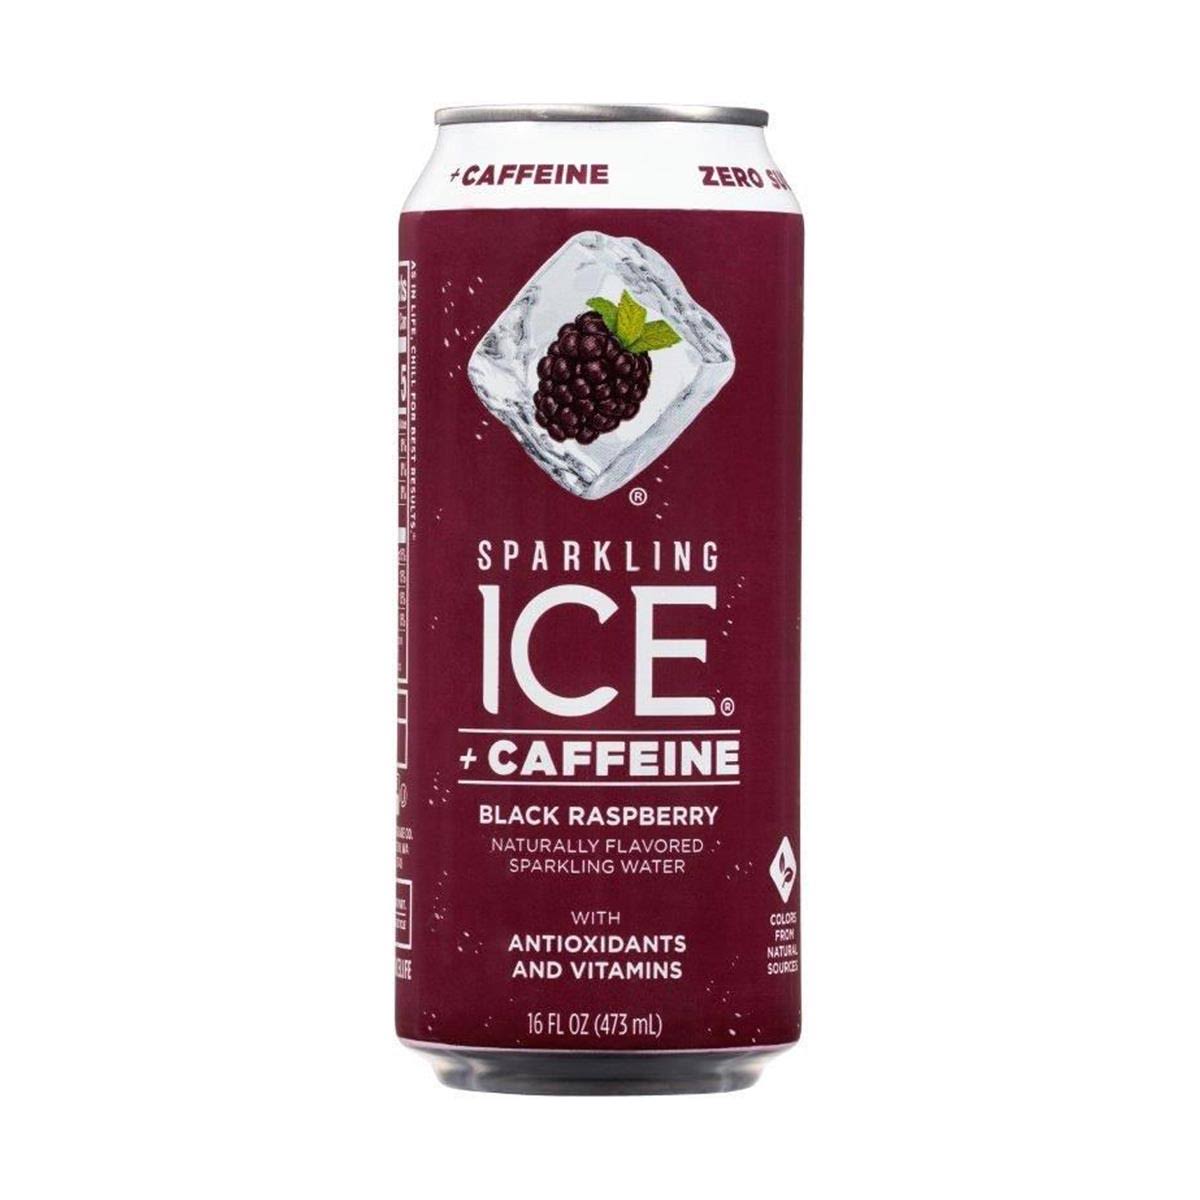 Sparkling Ice Sparkling Water, Zero Sugar, +Caffeine, Black Raspberry - 16 fl oz